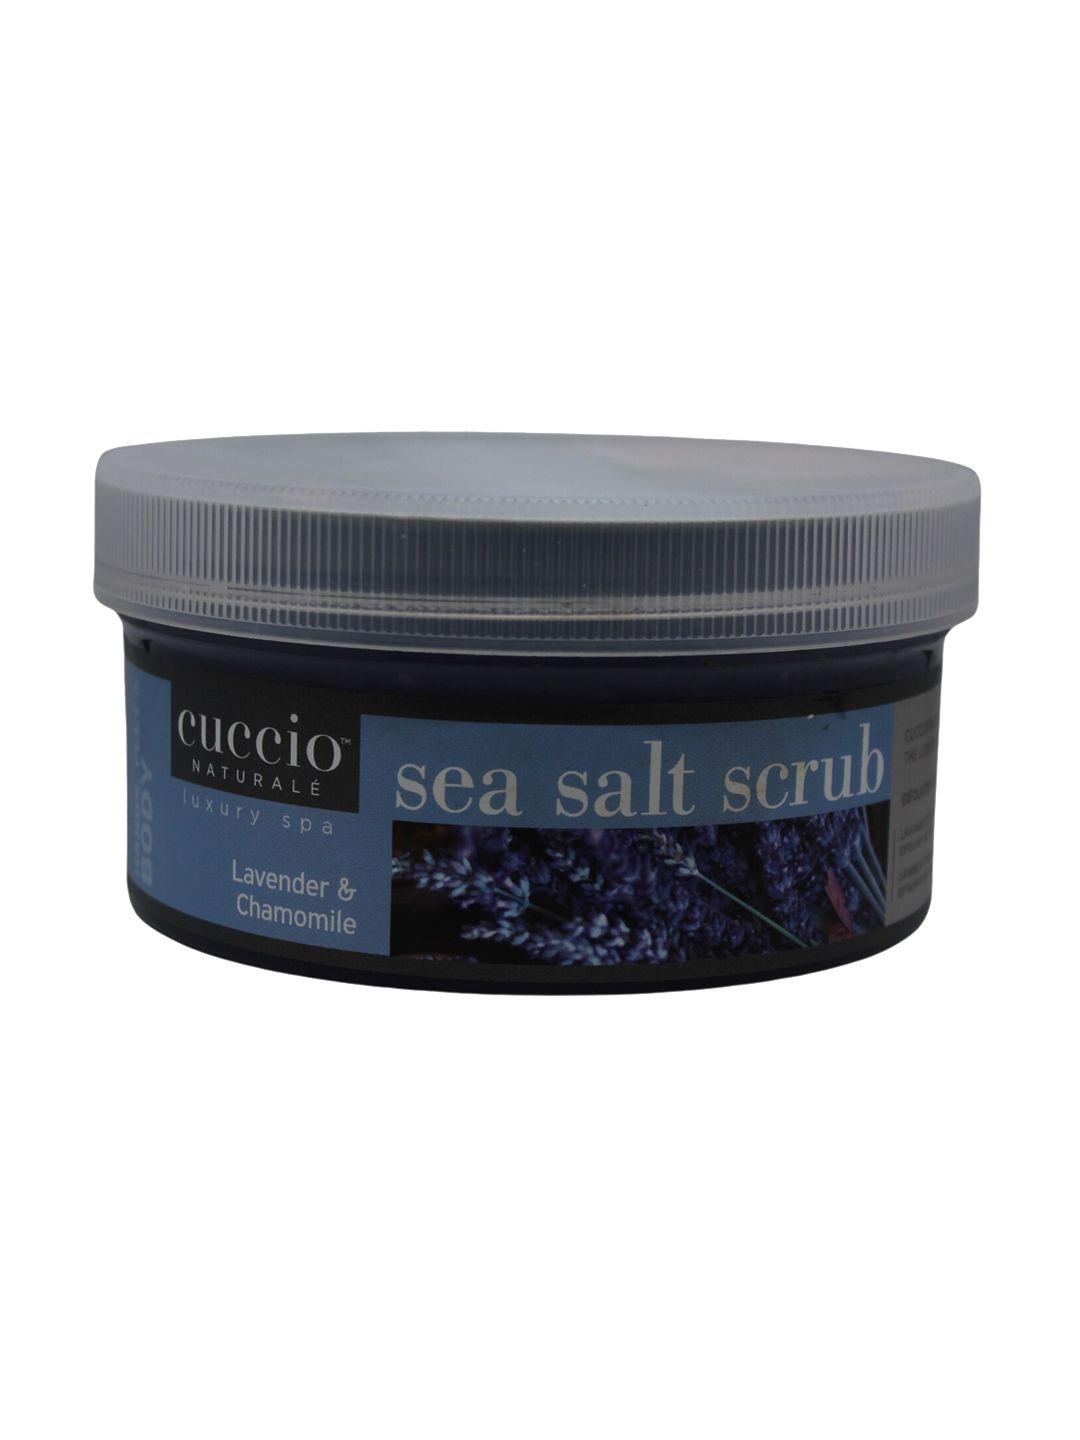 cuccio lavender & chamomile sea salt scrub 553gm